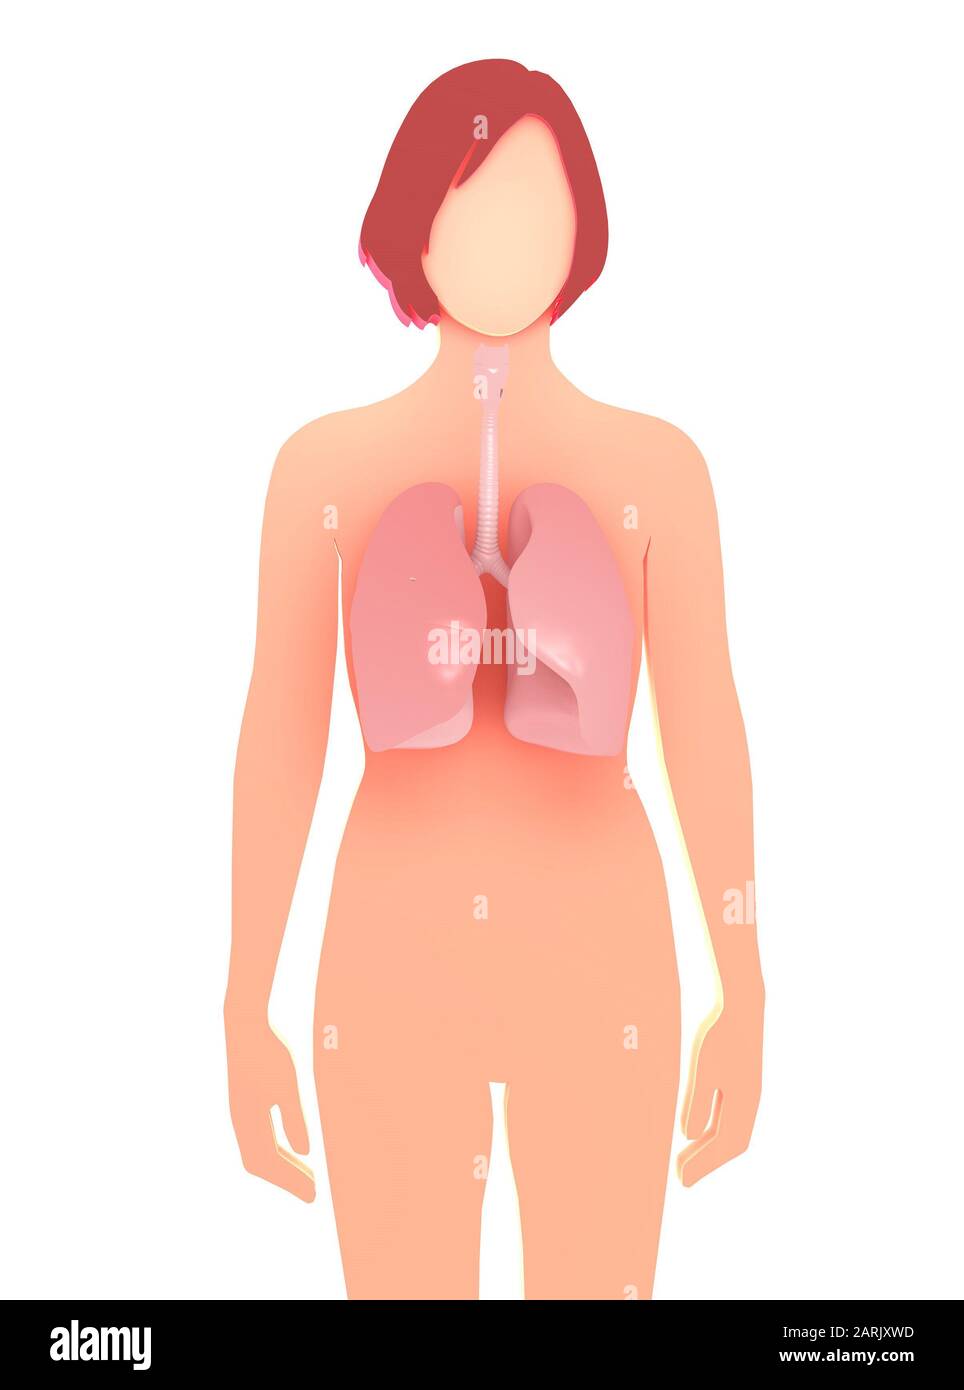 illustration tridimensionnelle de la silhouette graphique d'une femme, montrant les poumons et les bronches qui se distinguent. Représentation graphique de l'anatomie interne. Banque D'Images